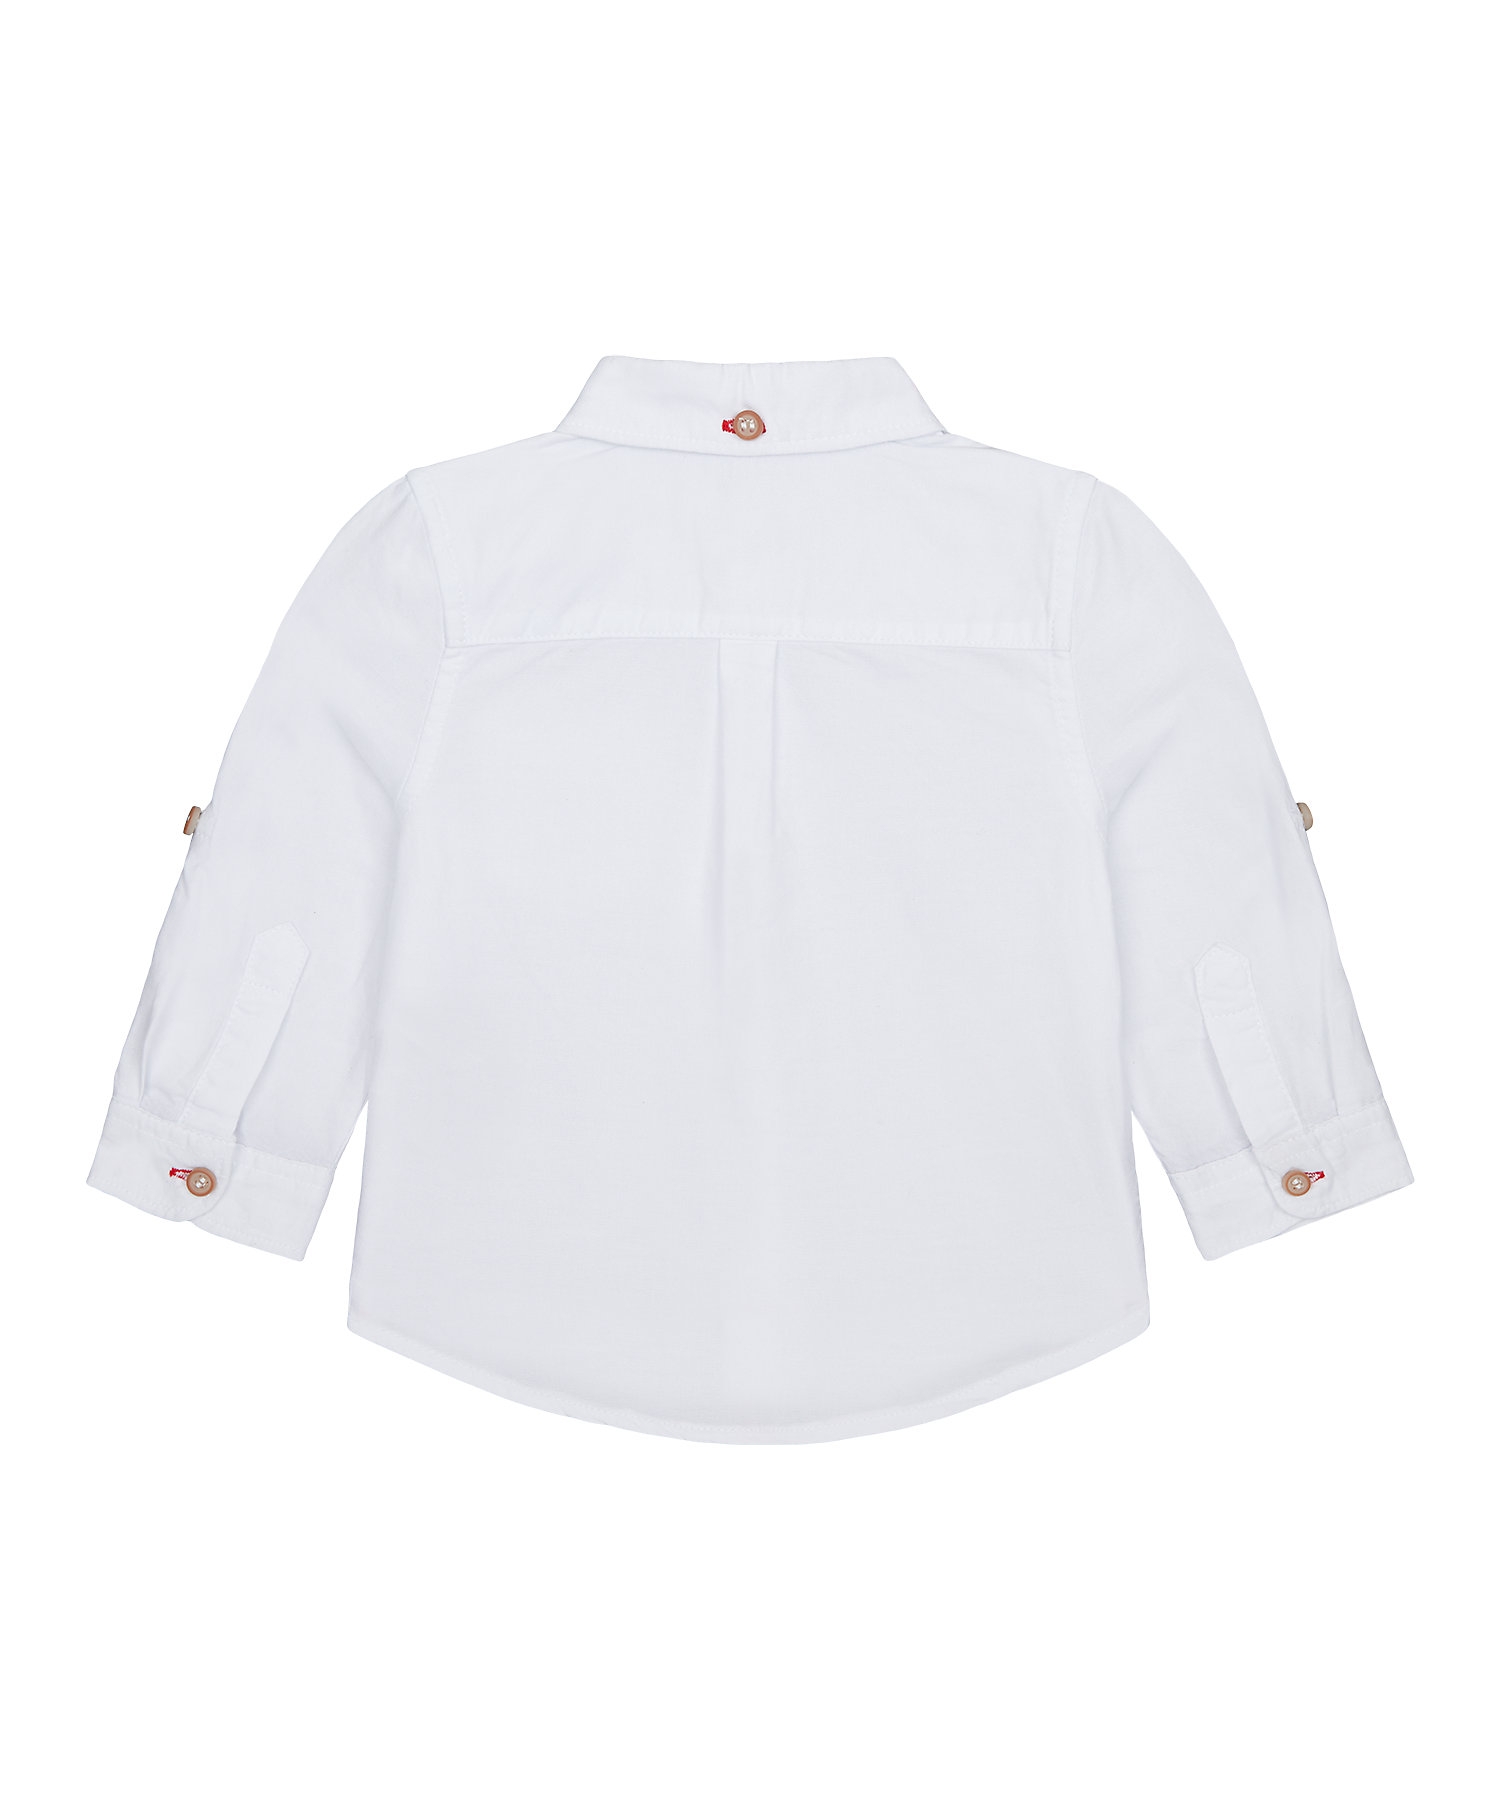 Boys Full Sleeves Oxford Shirt - White